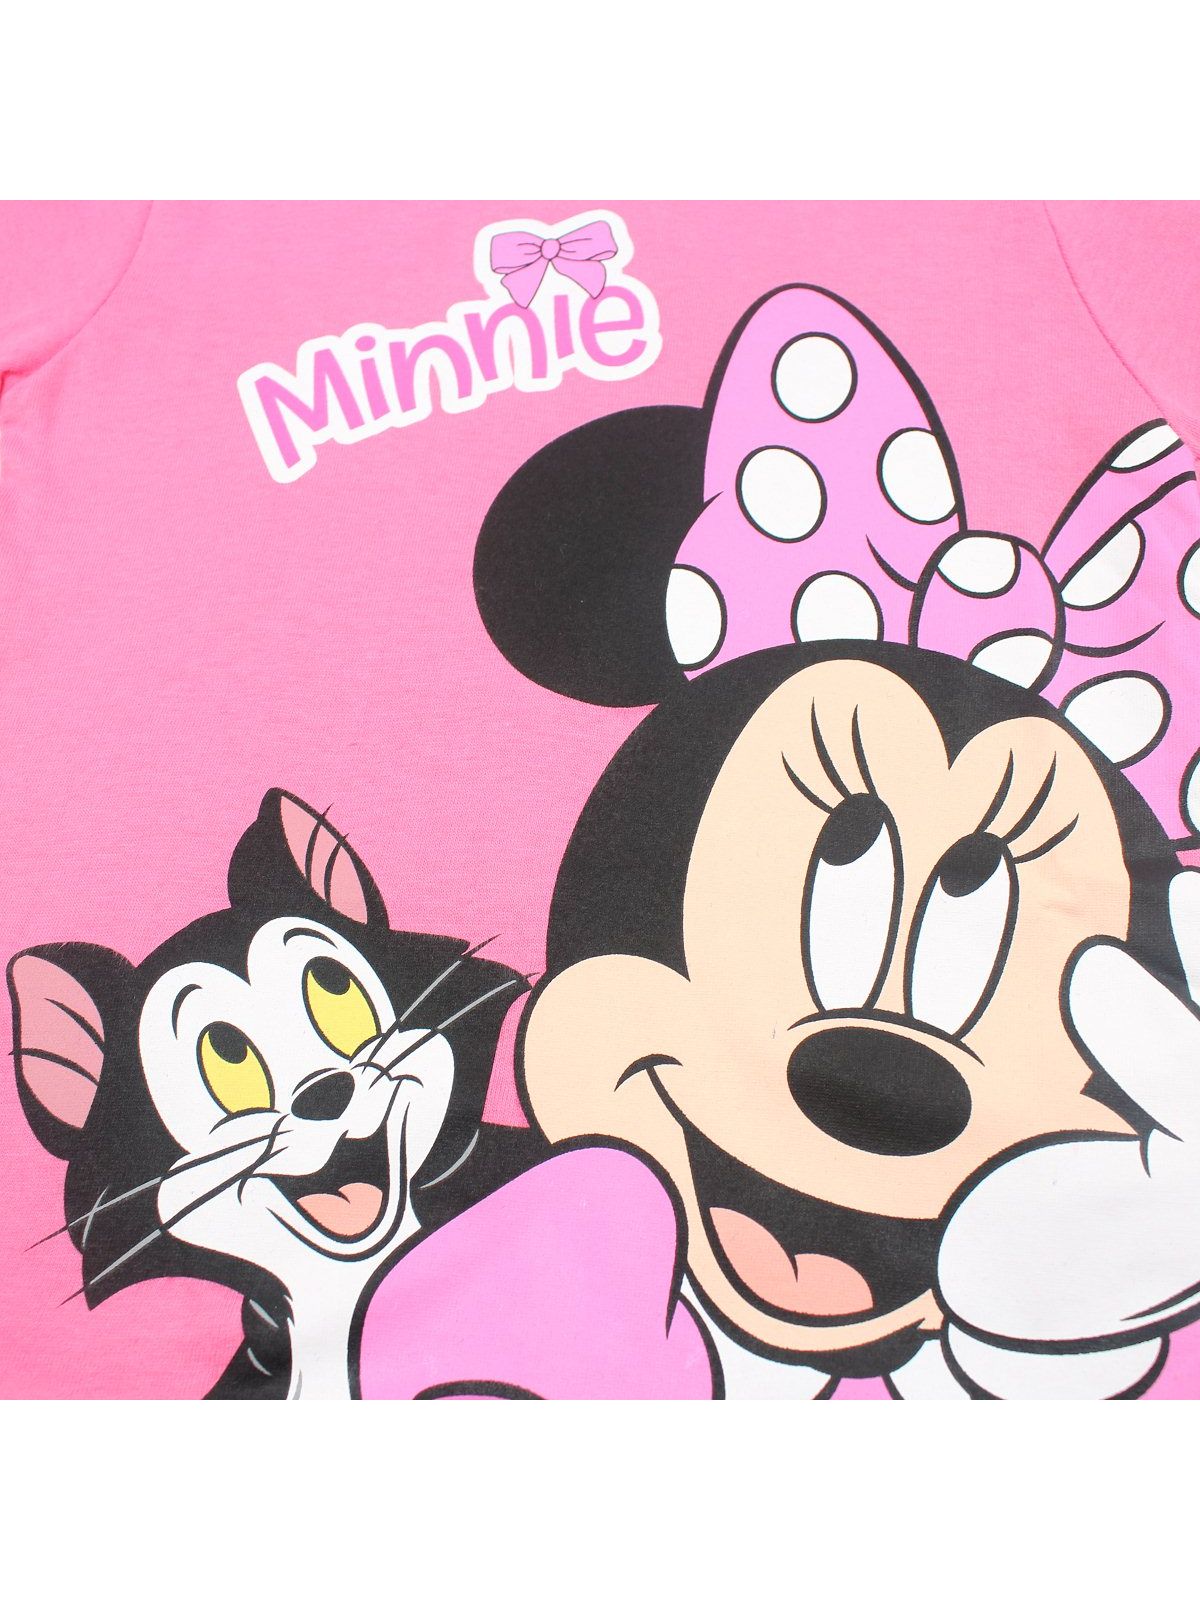 Minnie t-shirt.